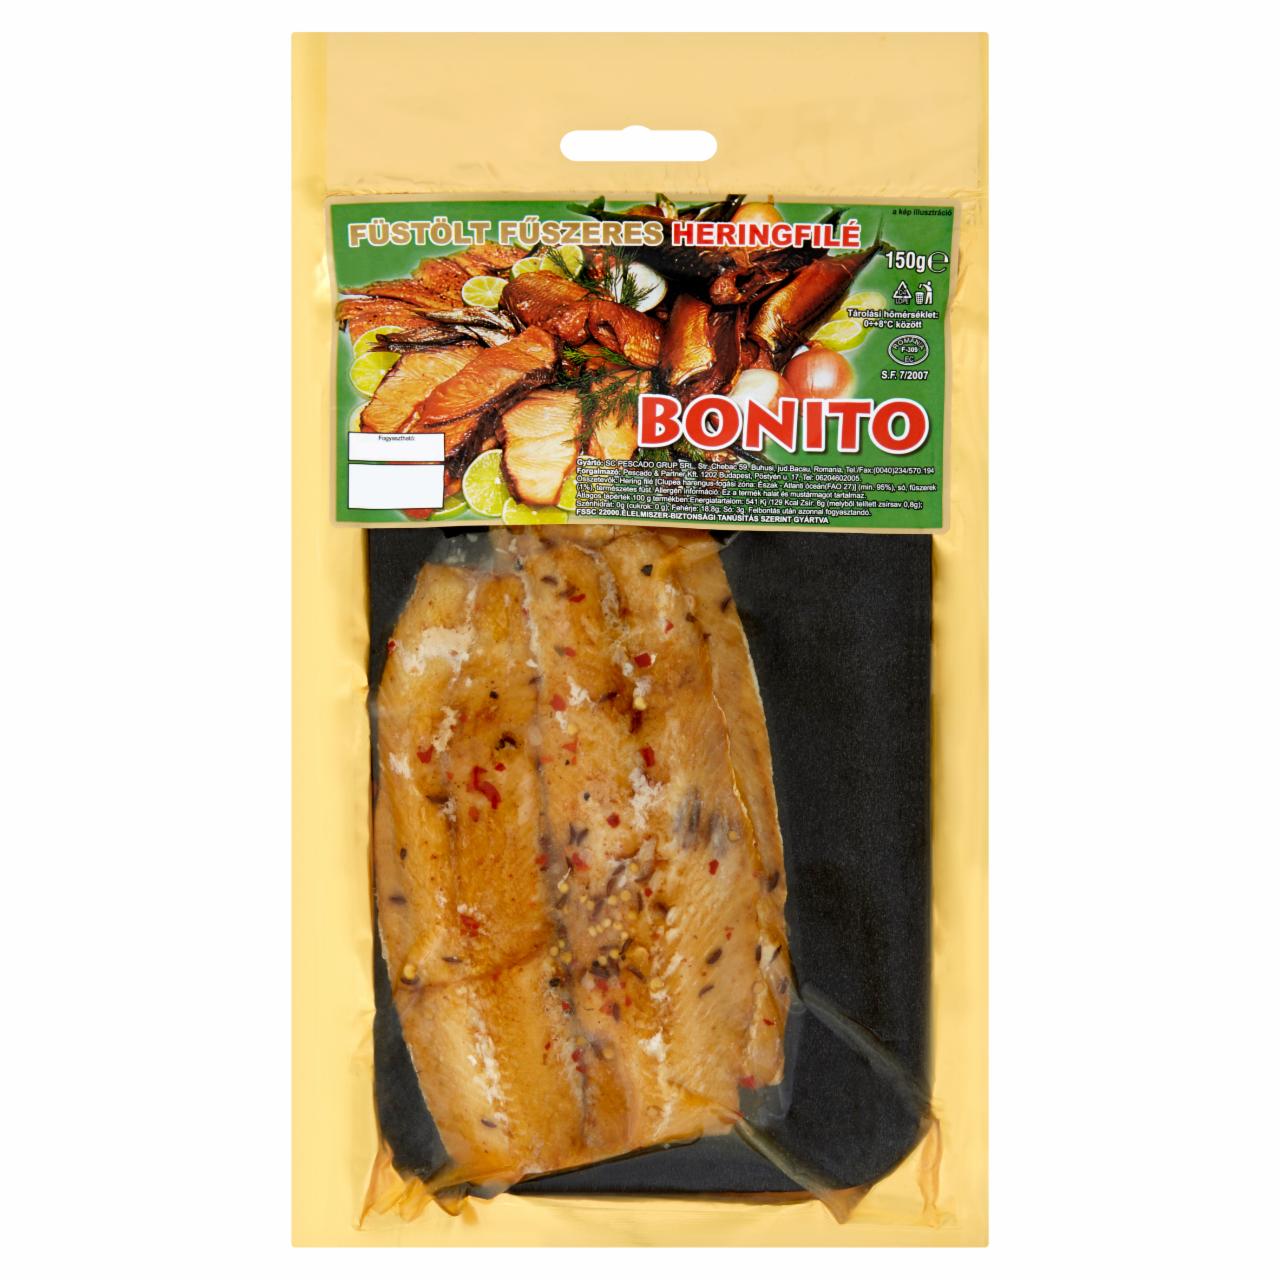 Képek - Bonito füstölt fűszeres heringfilé 150 g